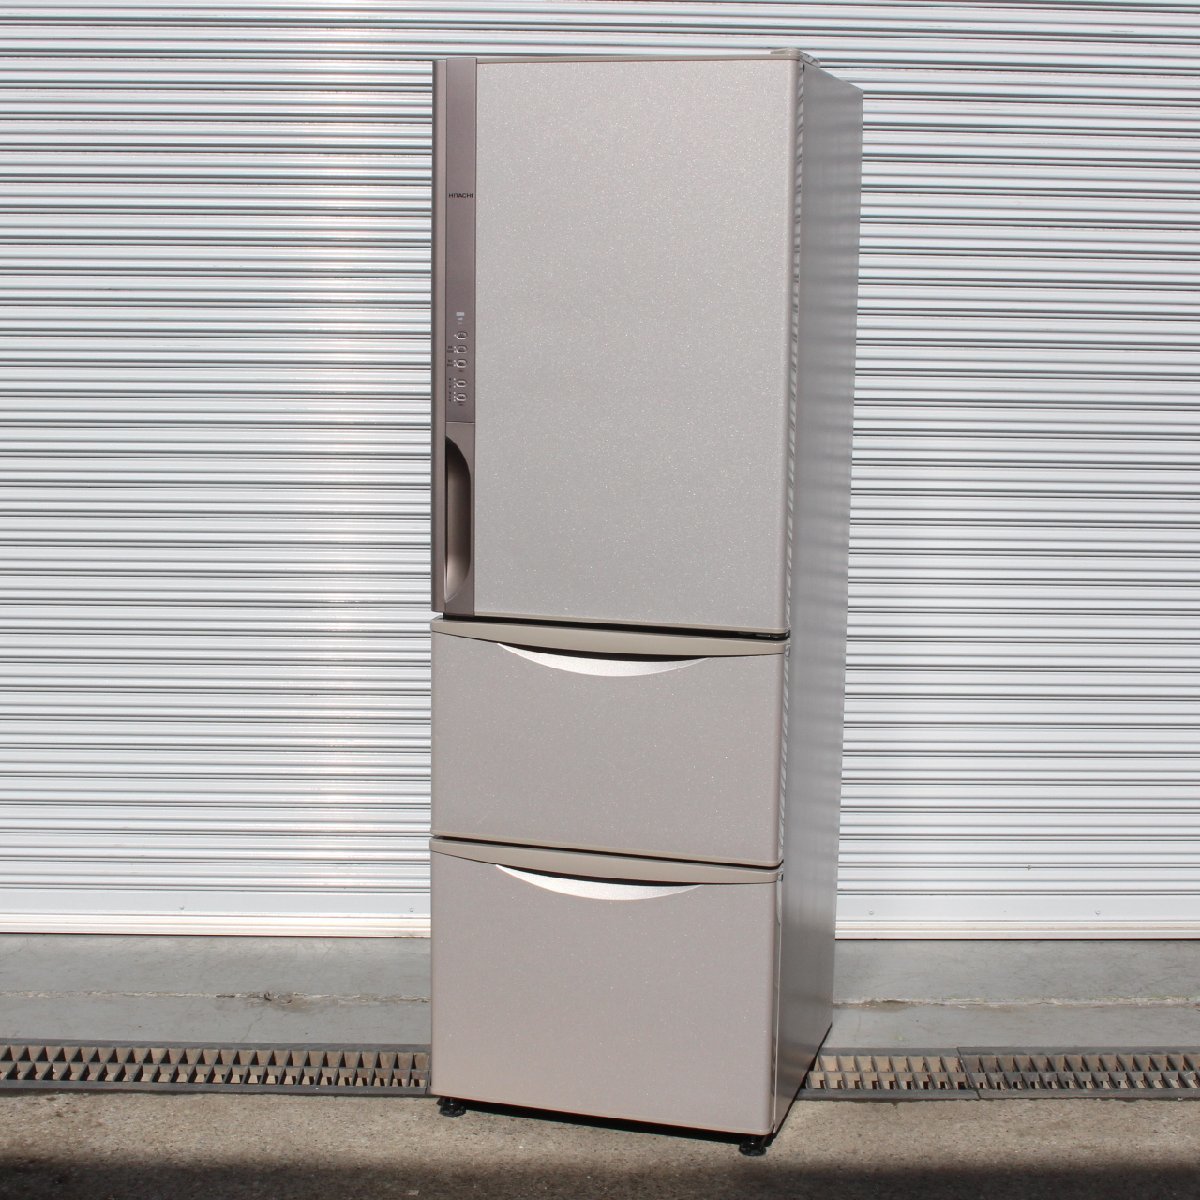 東京都文京区にて 日立 ノンフロン冷凍冷蔵庫 R-K380GV(T) 2016年製 を出張買取させて頂きました。